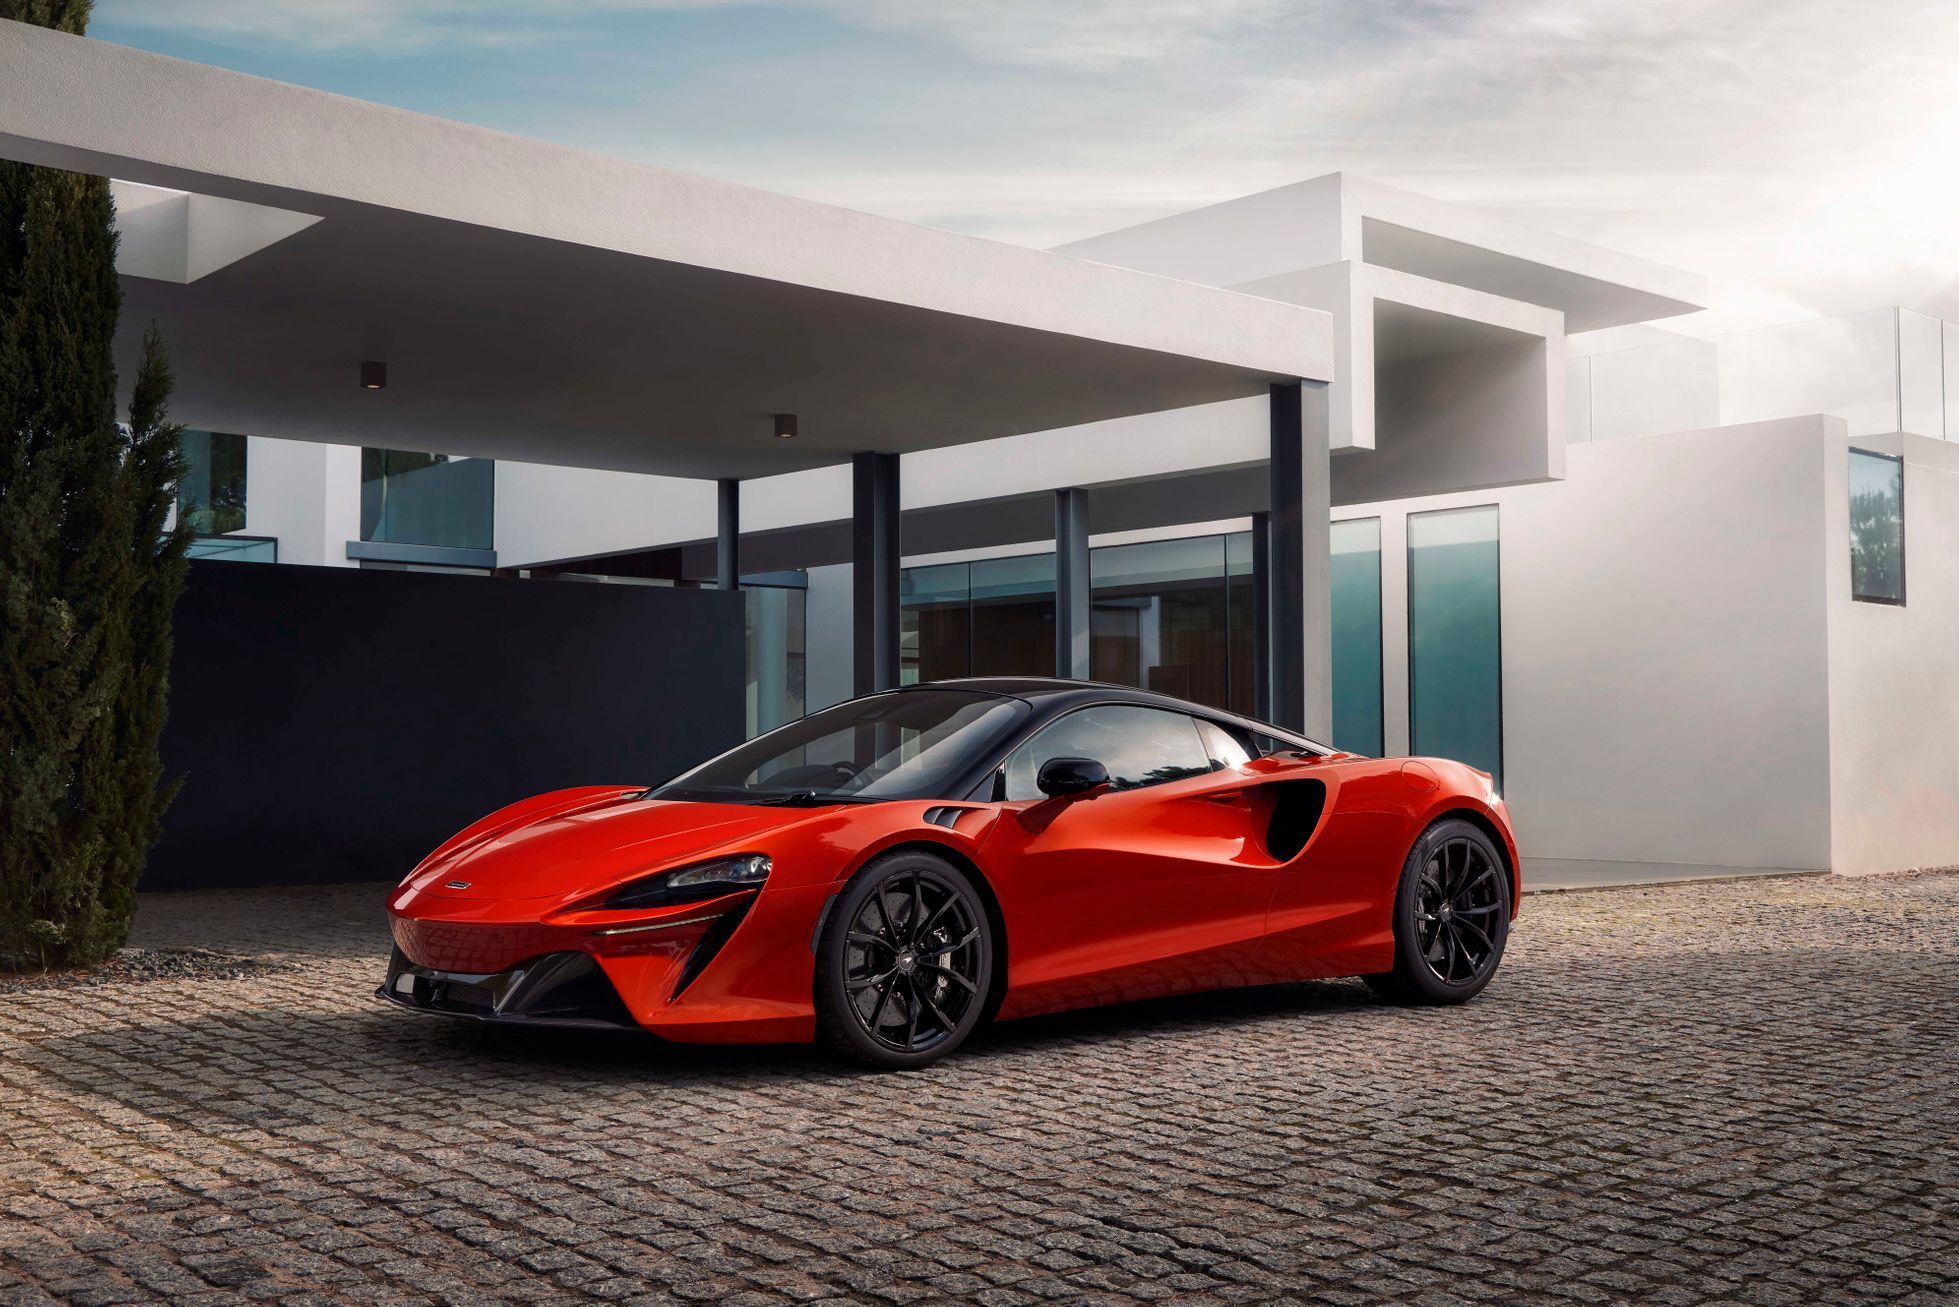 McLaren Artura nový supersport plug-in hybrid